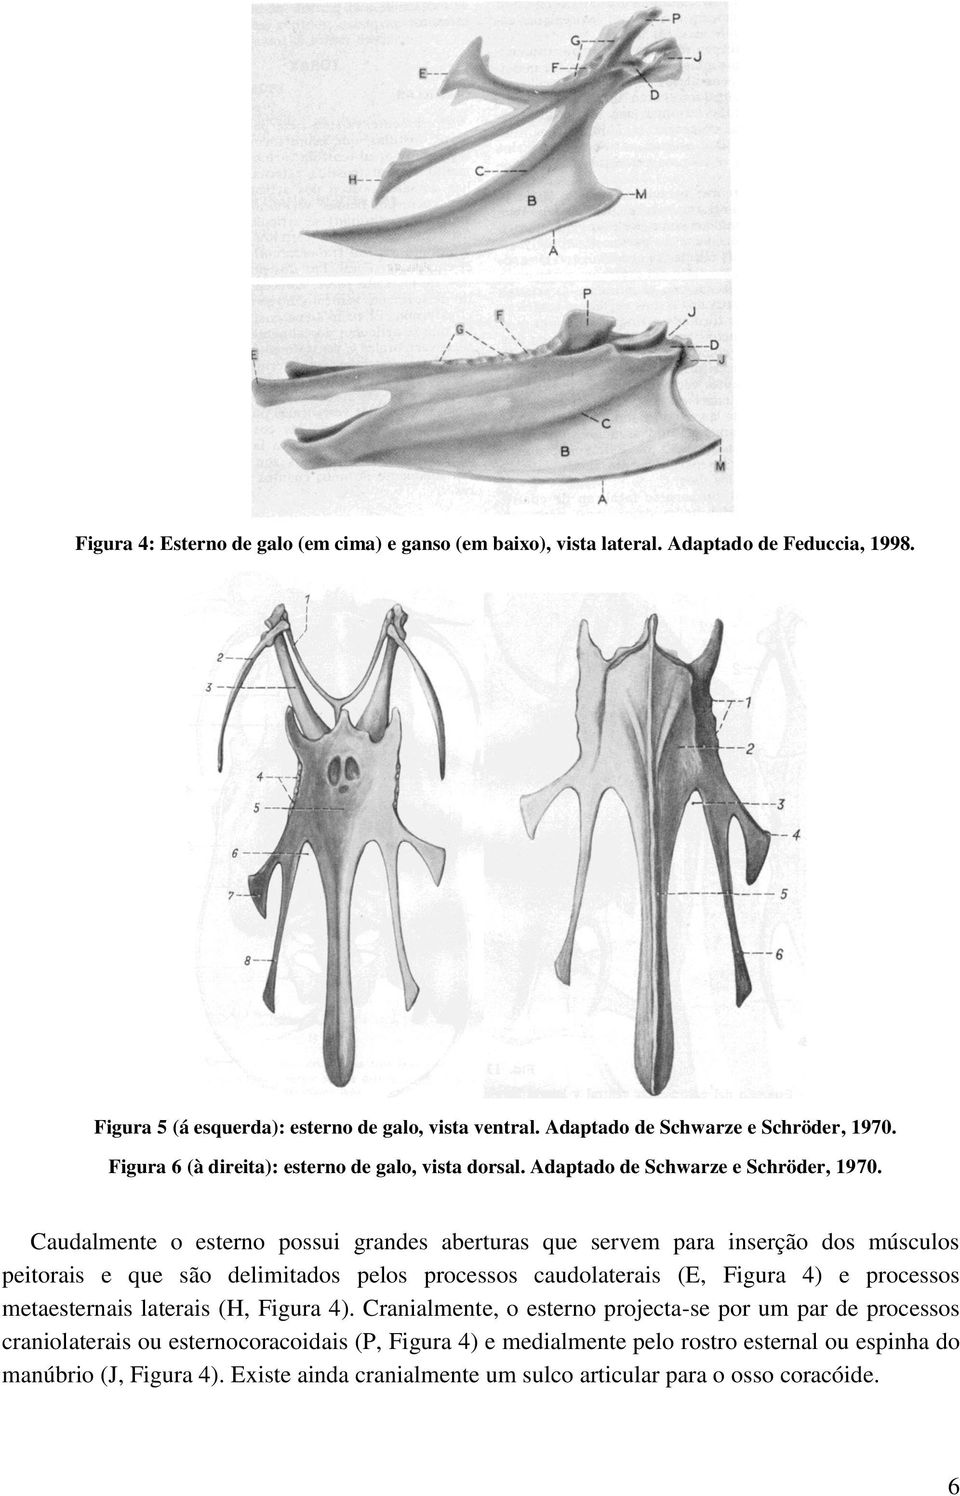 Caudalmente o esterno possui grandes aberturas que servem para inserção dos músculos peitorais e que são delimitados pelos processos caudolaterais (E, Figura 4) e processos metaesternais